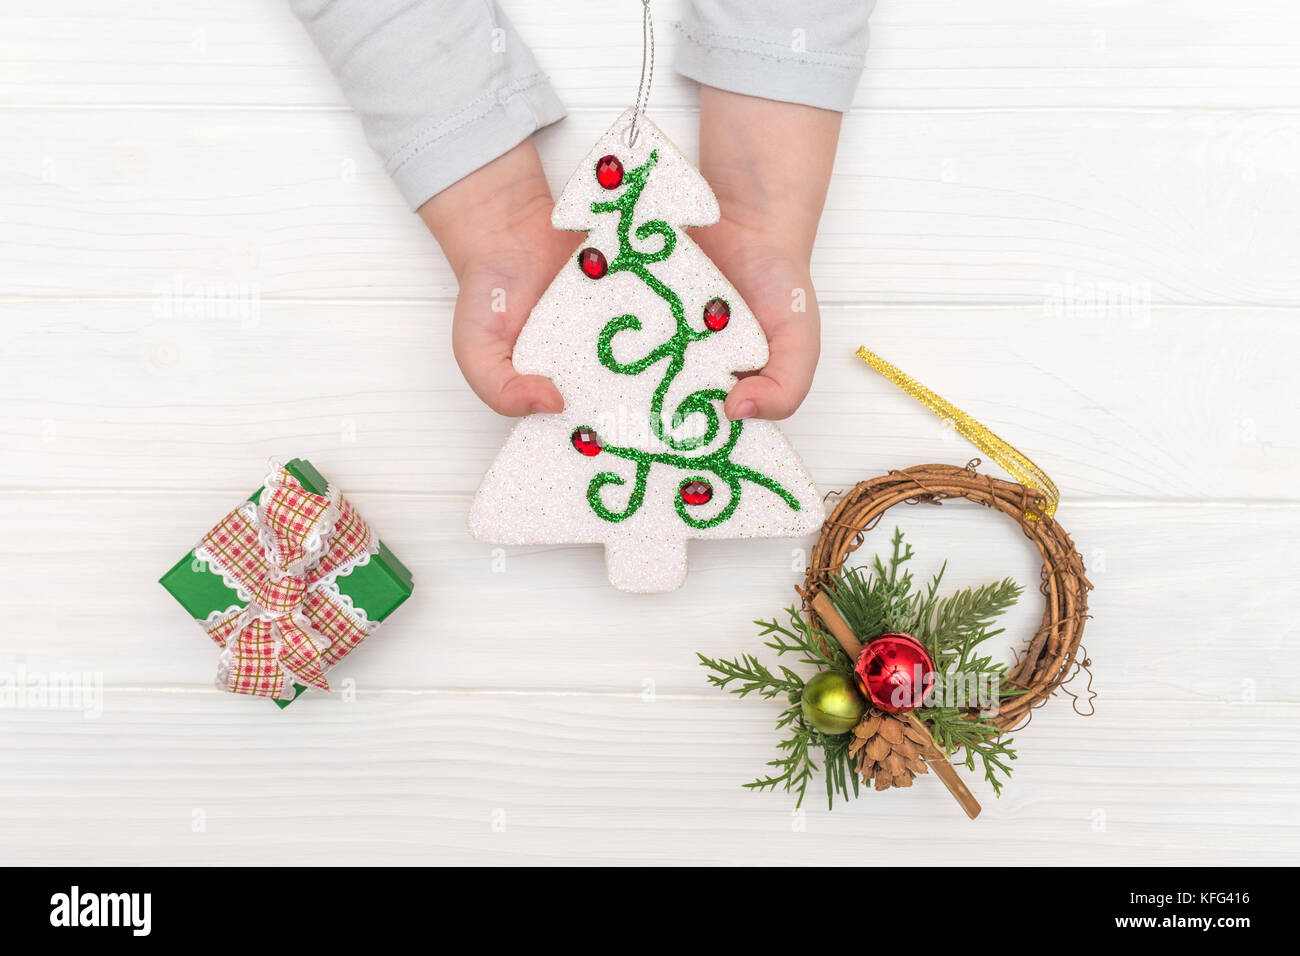 Weihnachten Kalender auf weißem Hintergrund. Child's Hände, die ornamentalen Weihnachtsbaum in der Nähe von geschenkboxen auf weißen Tisch Stockfoto